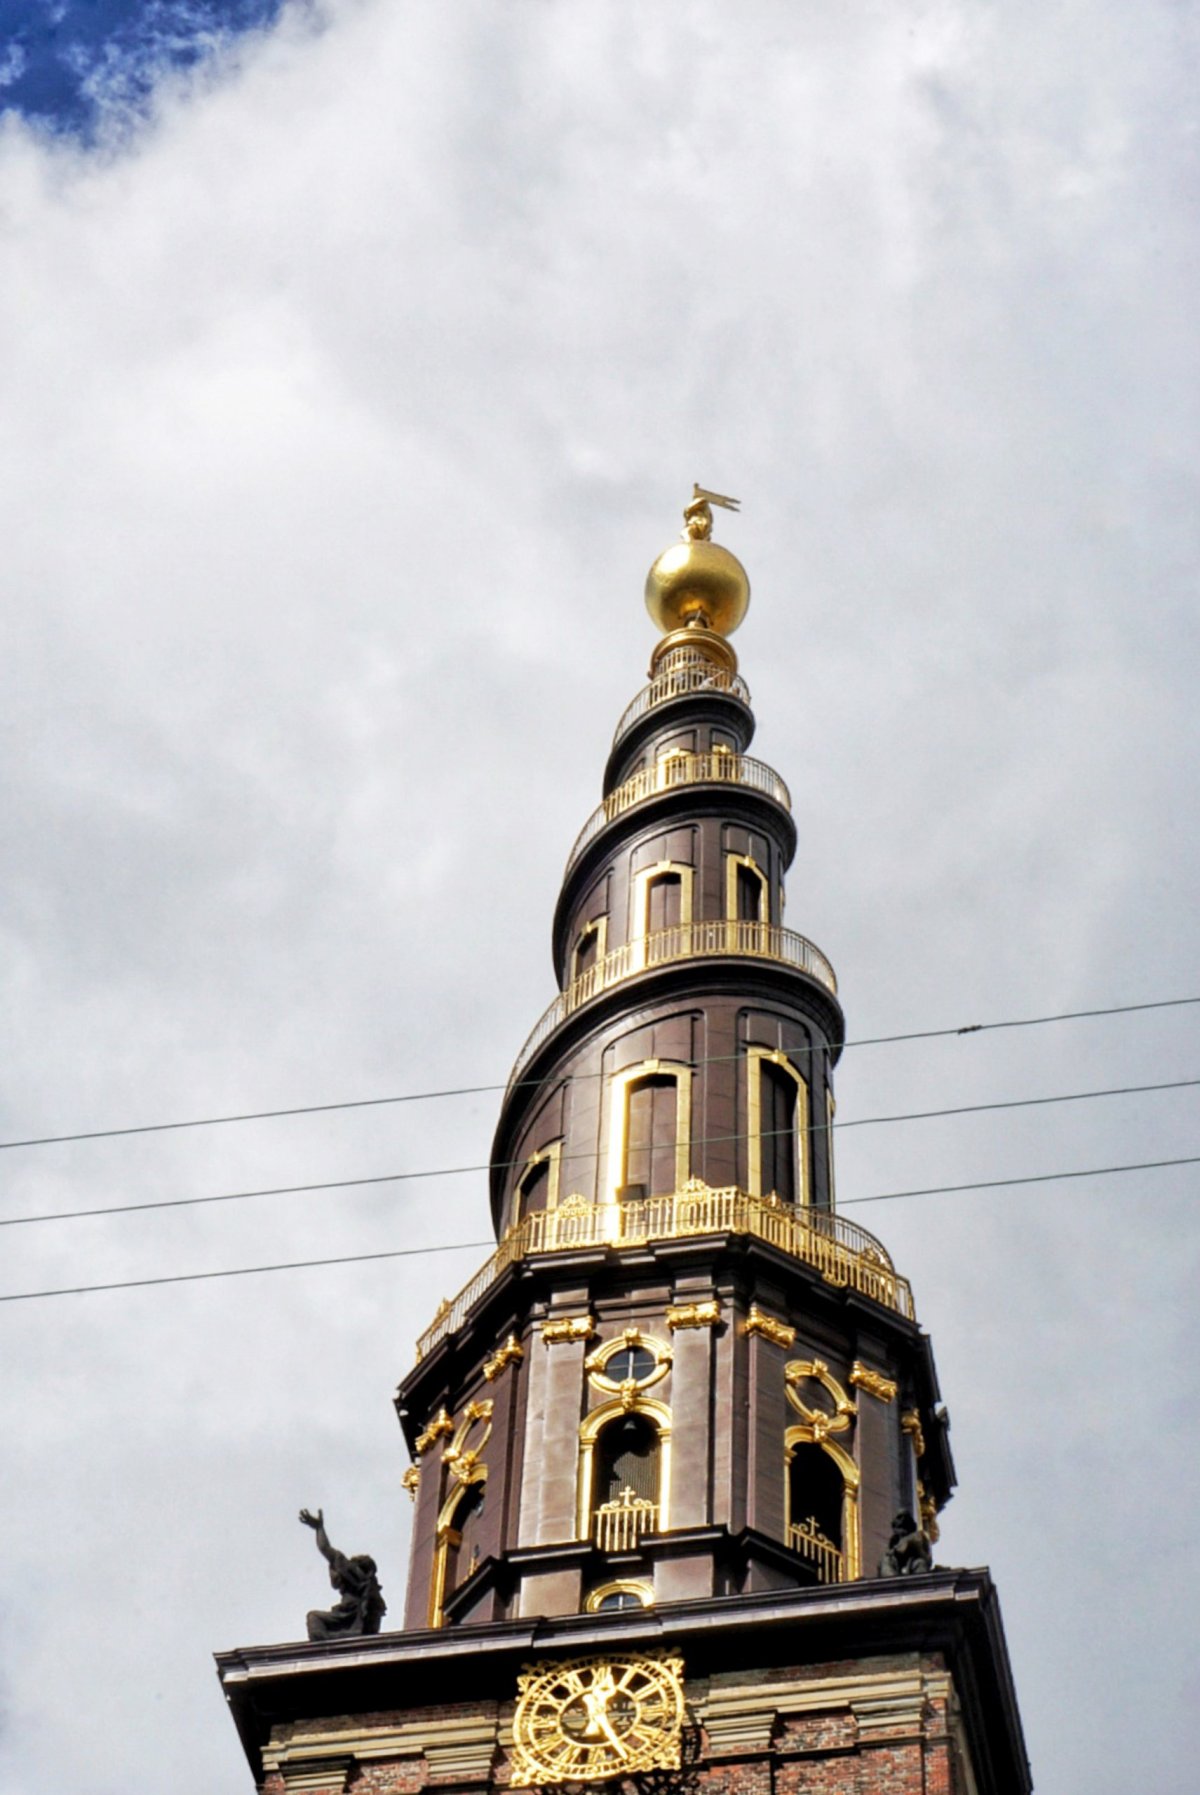 Věž kostela Vor Frelsers Kirke